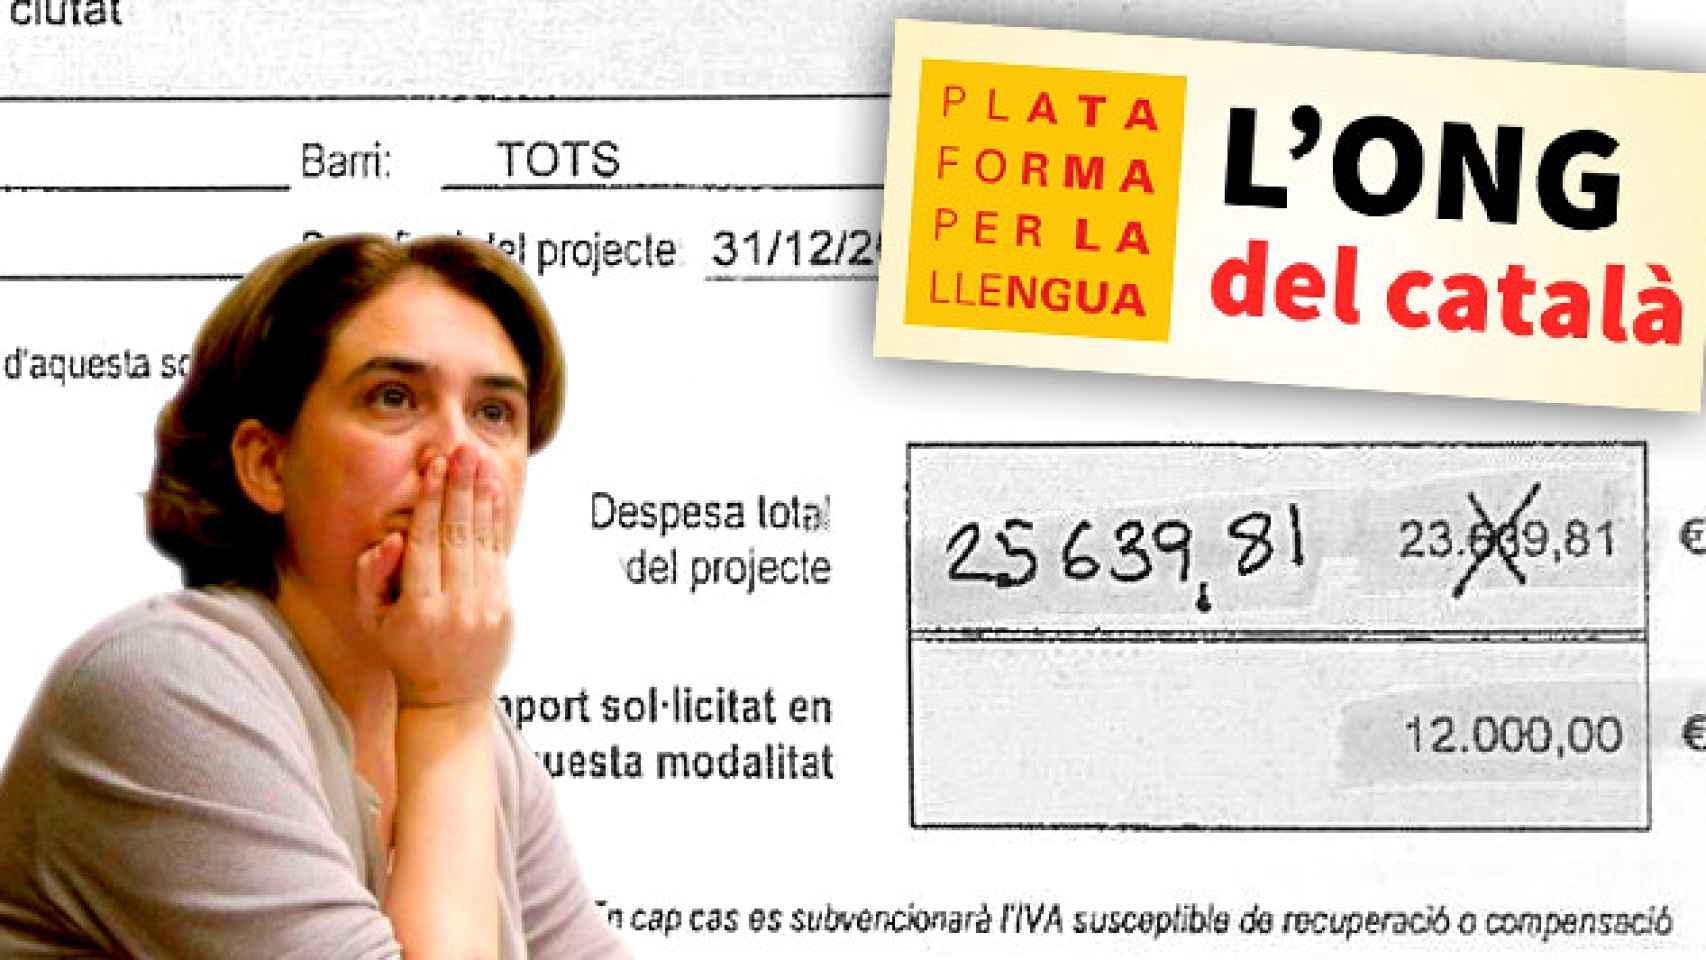 Ada Colau, alcaldesa de Barcelona, el logo de Plataforma per la Llengua y fragmento de una petición de las subvenciones / FOTOMONTAJE CG